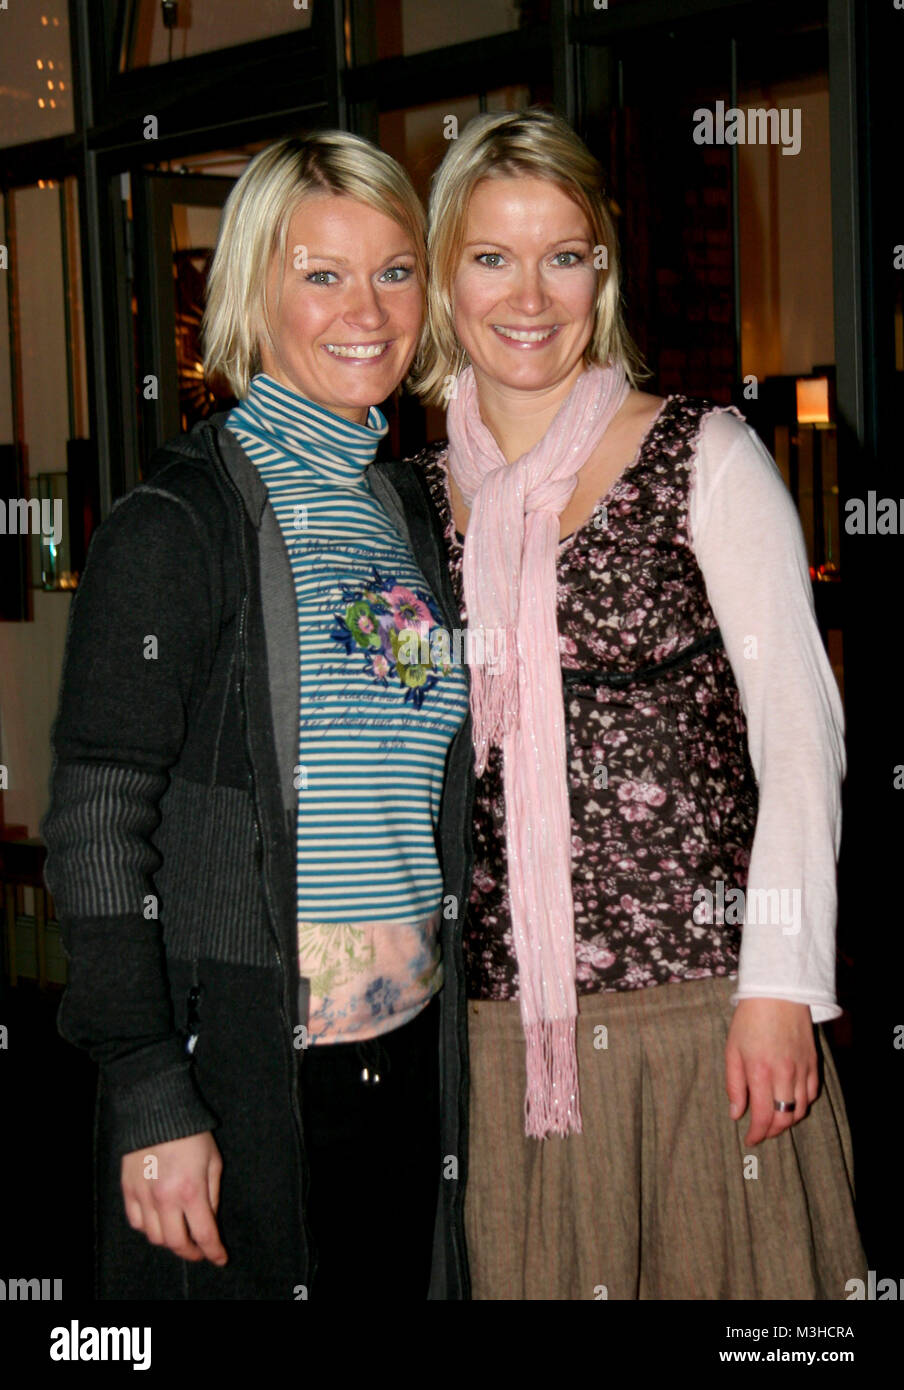 Folke und Gyde Schmidt bei der Filmpremiere von Little Miss Sunshine Zeise im Kino am 22.11.2006 Foto Stock